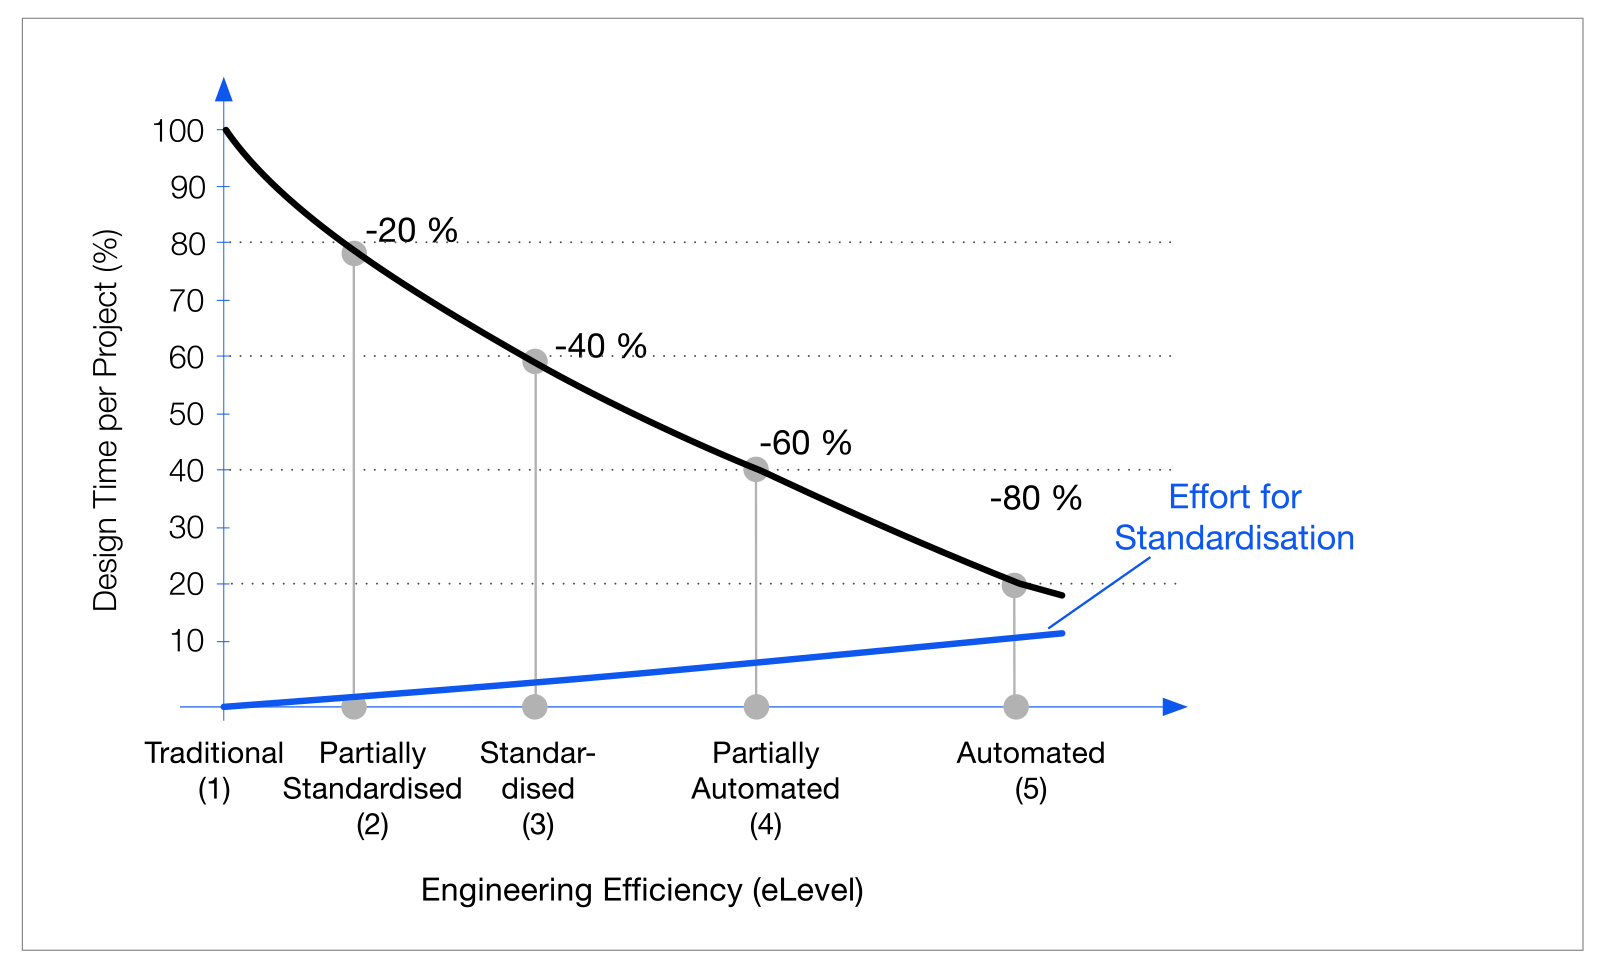 Resultados: curva de eficiencia de ingeniería de referencia